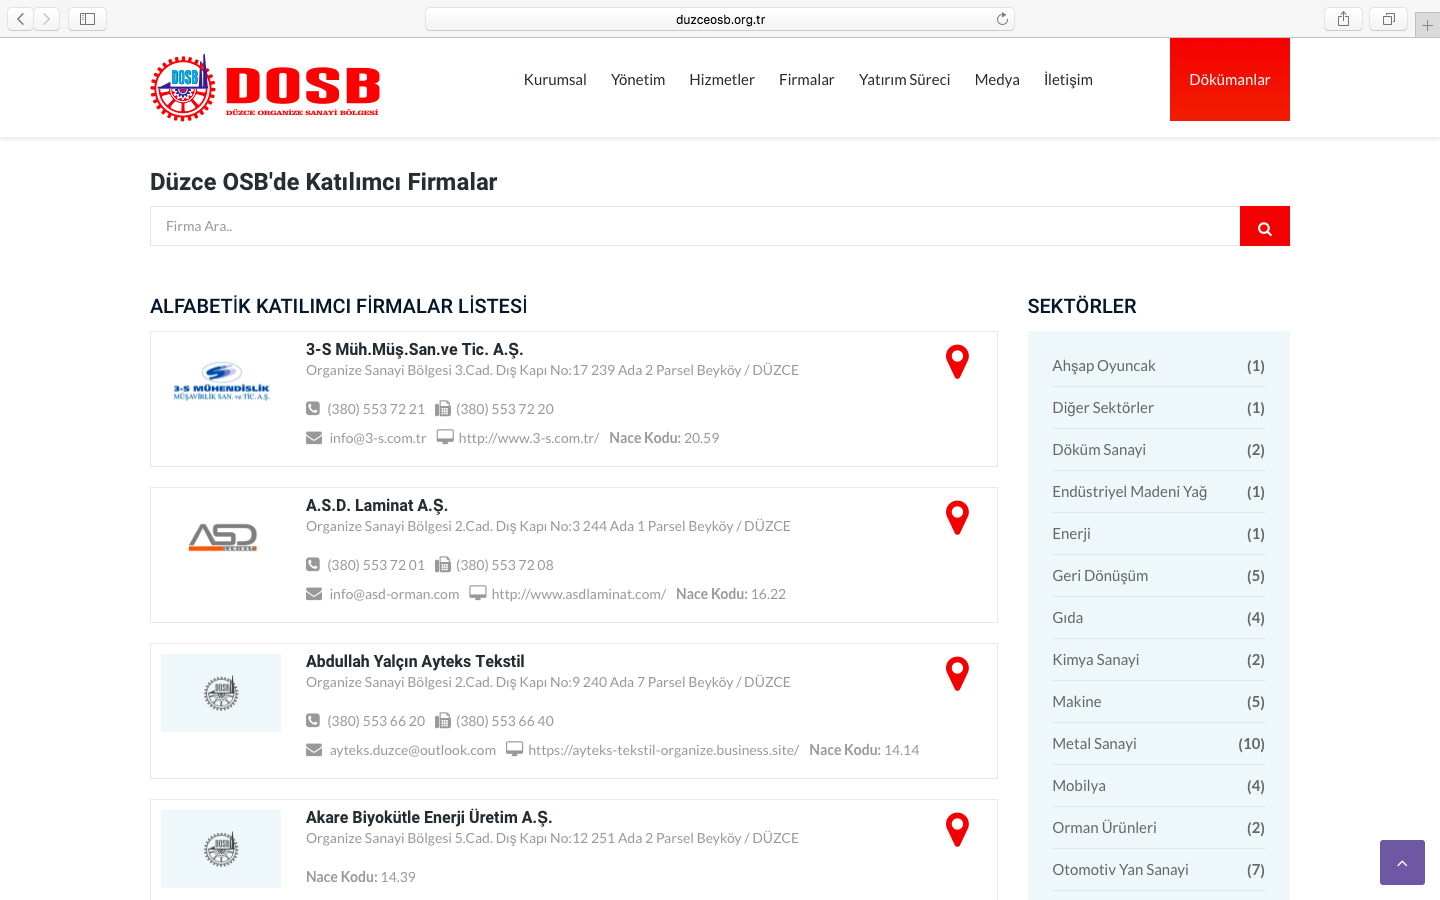 Düzce Organize Sanayi Bölgesi Müdürlüğüne ait Web Sitesi Yenilendi